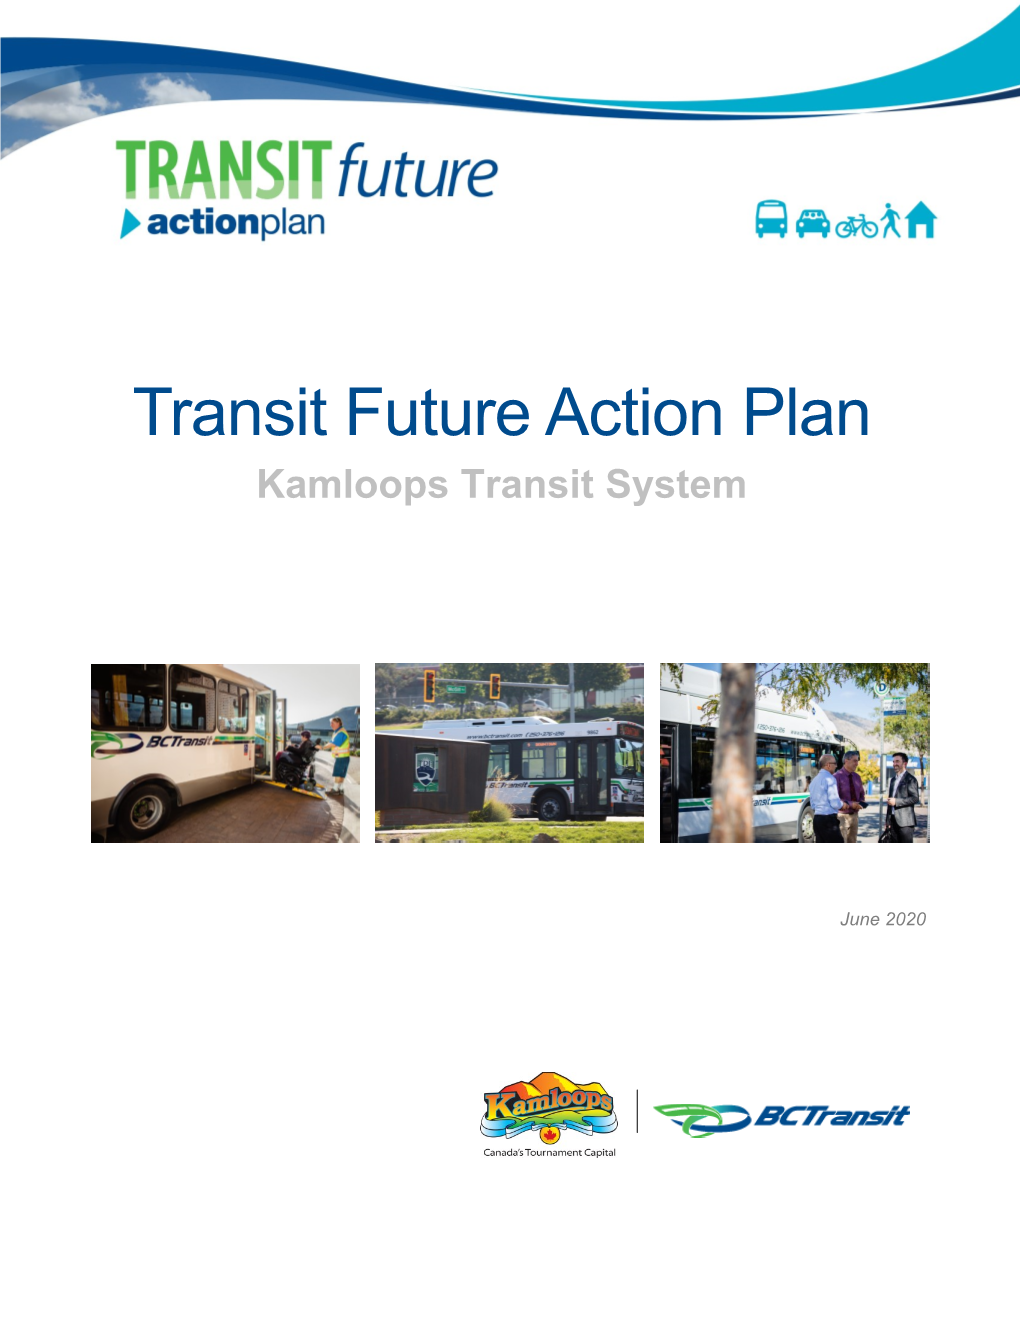 Transit Future Action Plan (June 2020)